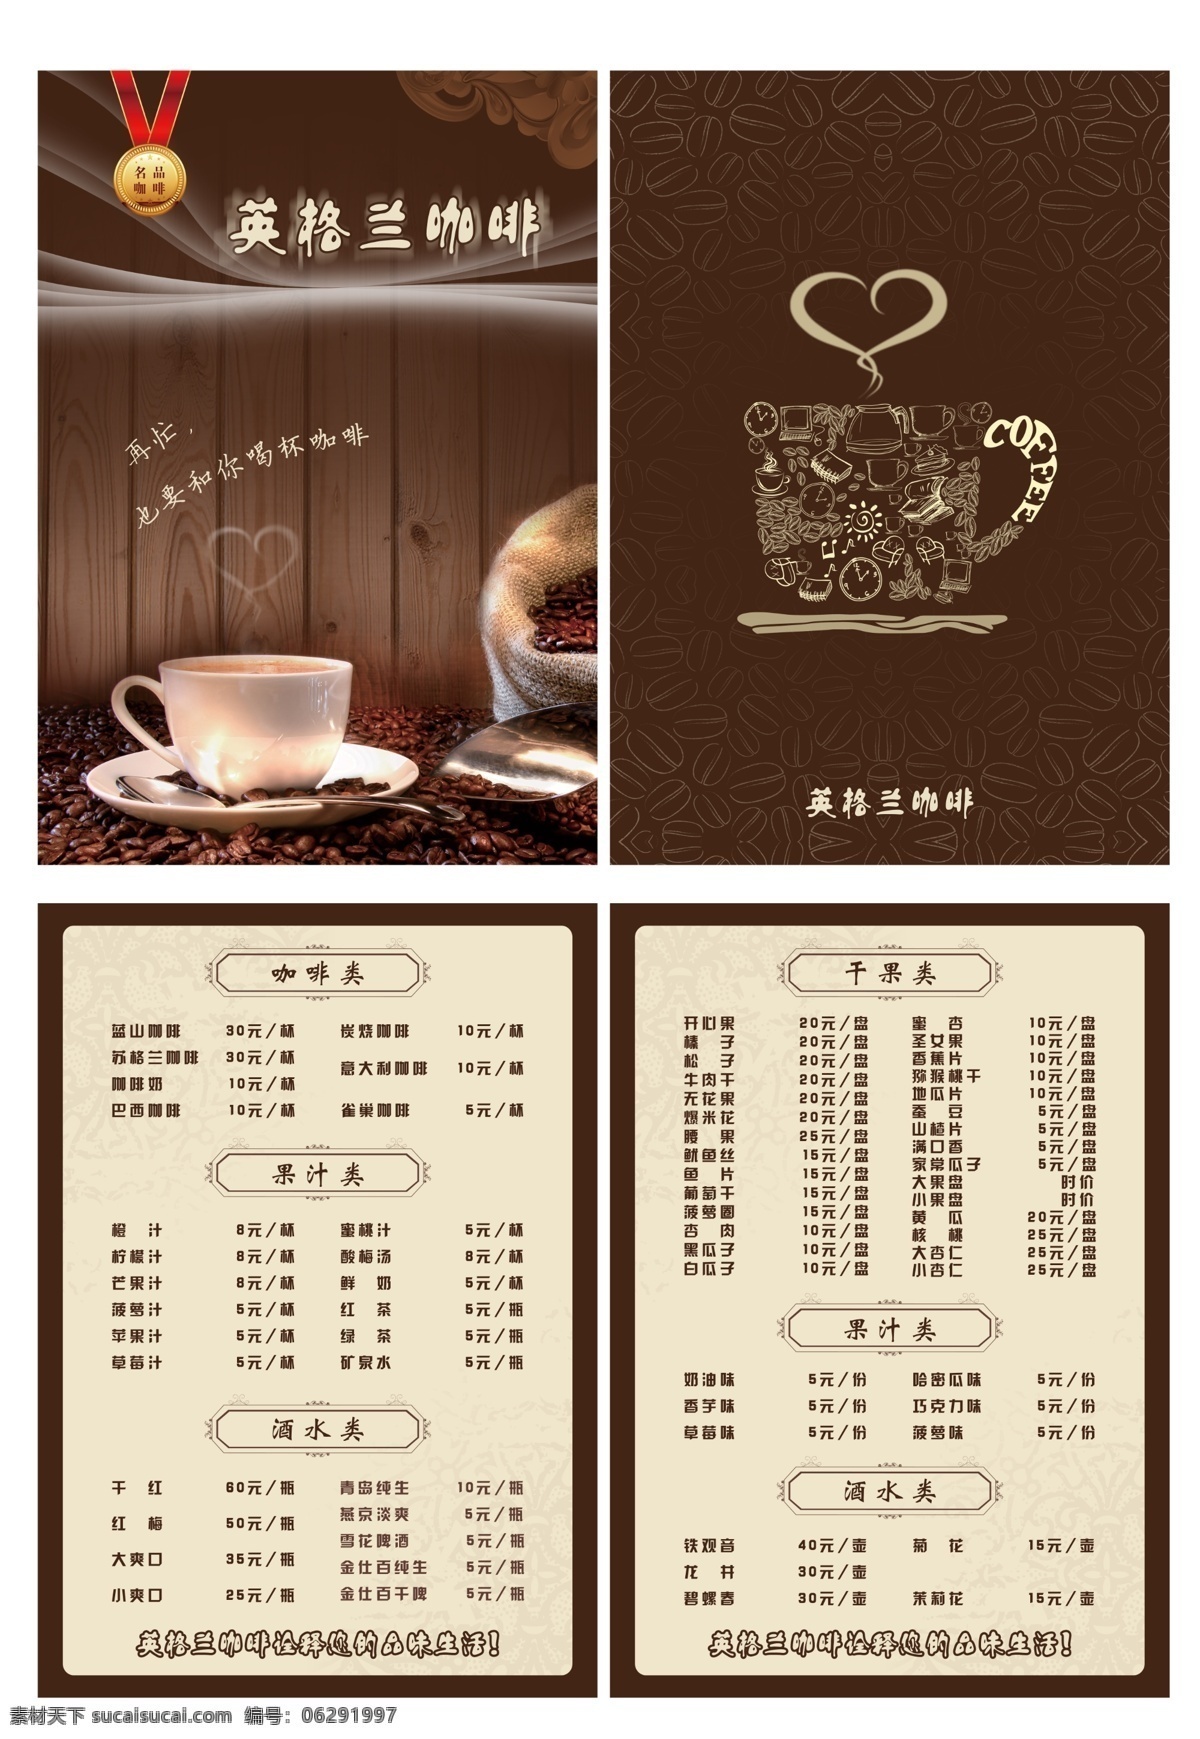 咖啡屋菜单 咖啡杯 可爱 贵气 丝滑 宣传画册海报 分层 源文件